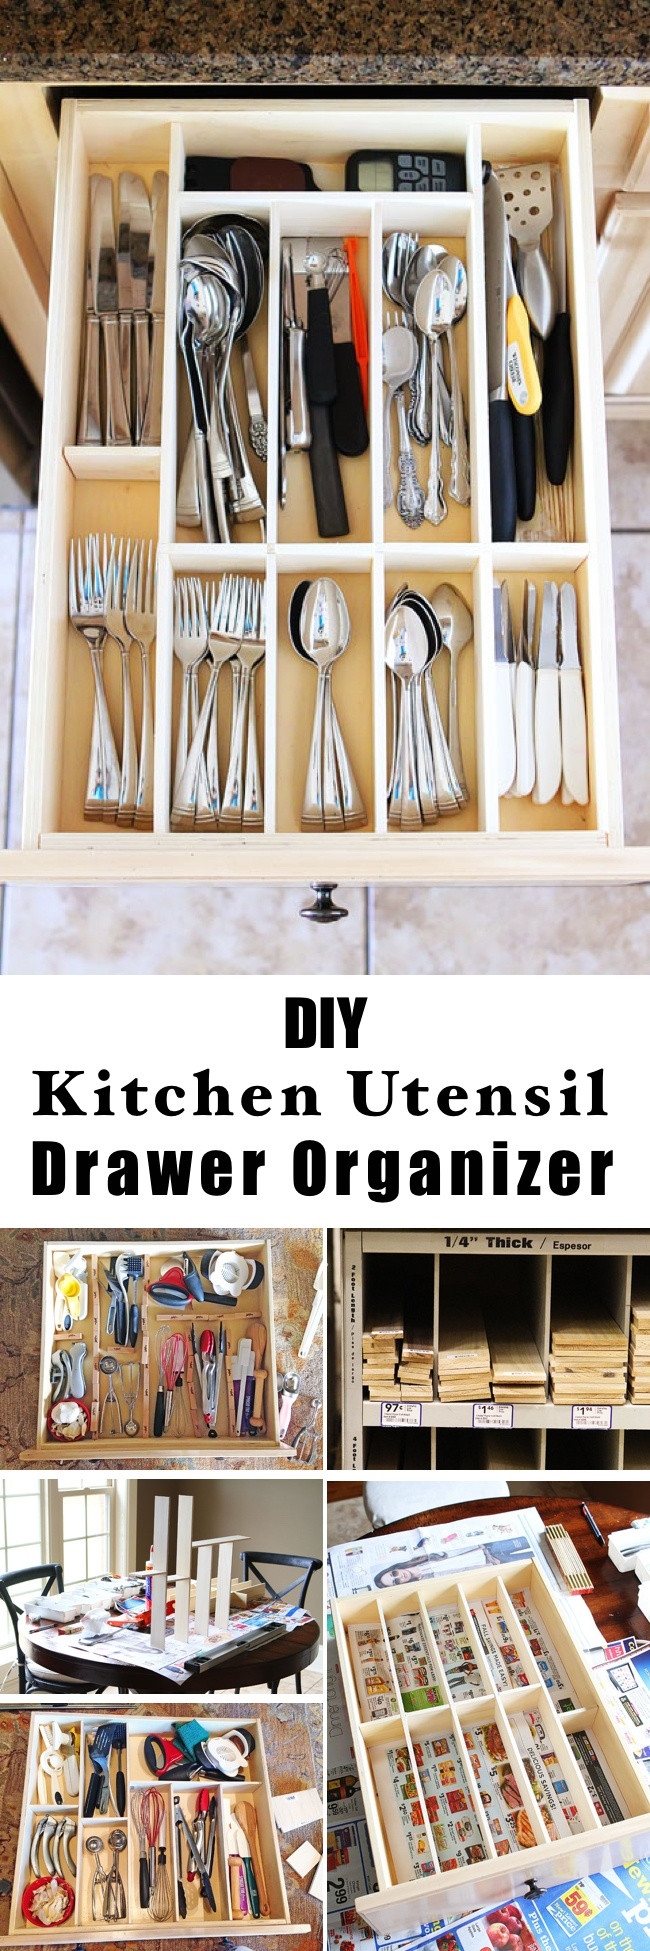 Kitchen Organizer Diy
 15 Innovative DIY Kitchen Organization & Storage Ideas